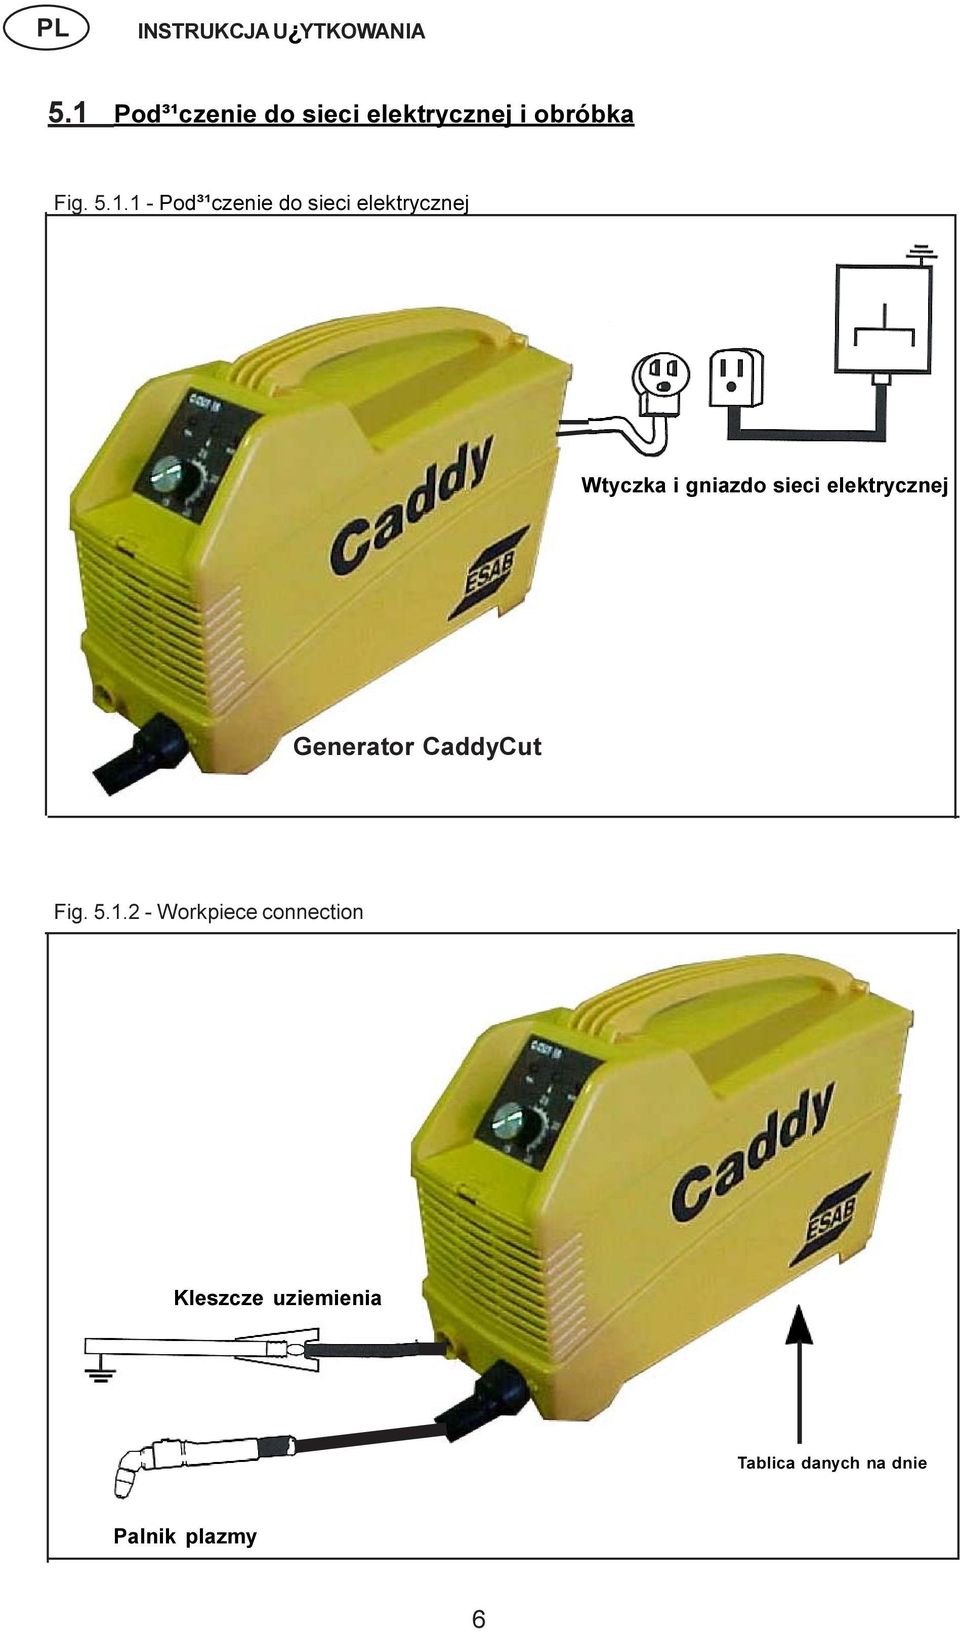 elektrycznej Generator CaddyCut Fig. 5.1.